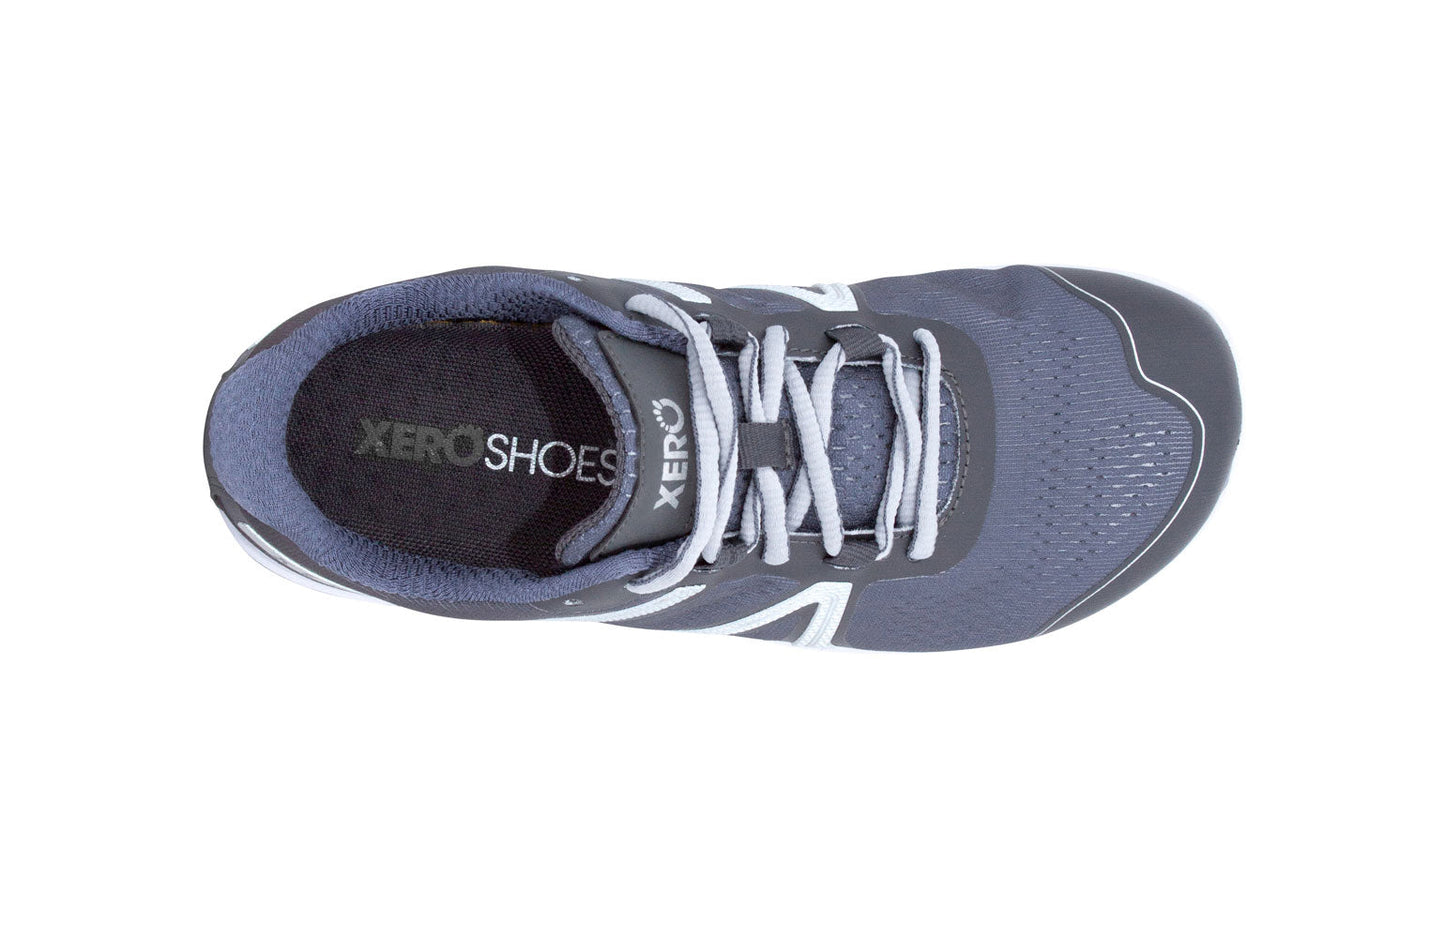 Xero Shoes HFS Womens barfods træningssko/løbesko til kvinder i farven steel gray, top